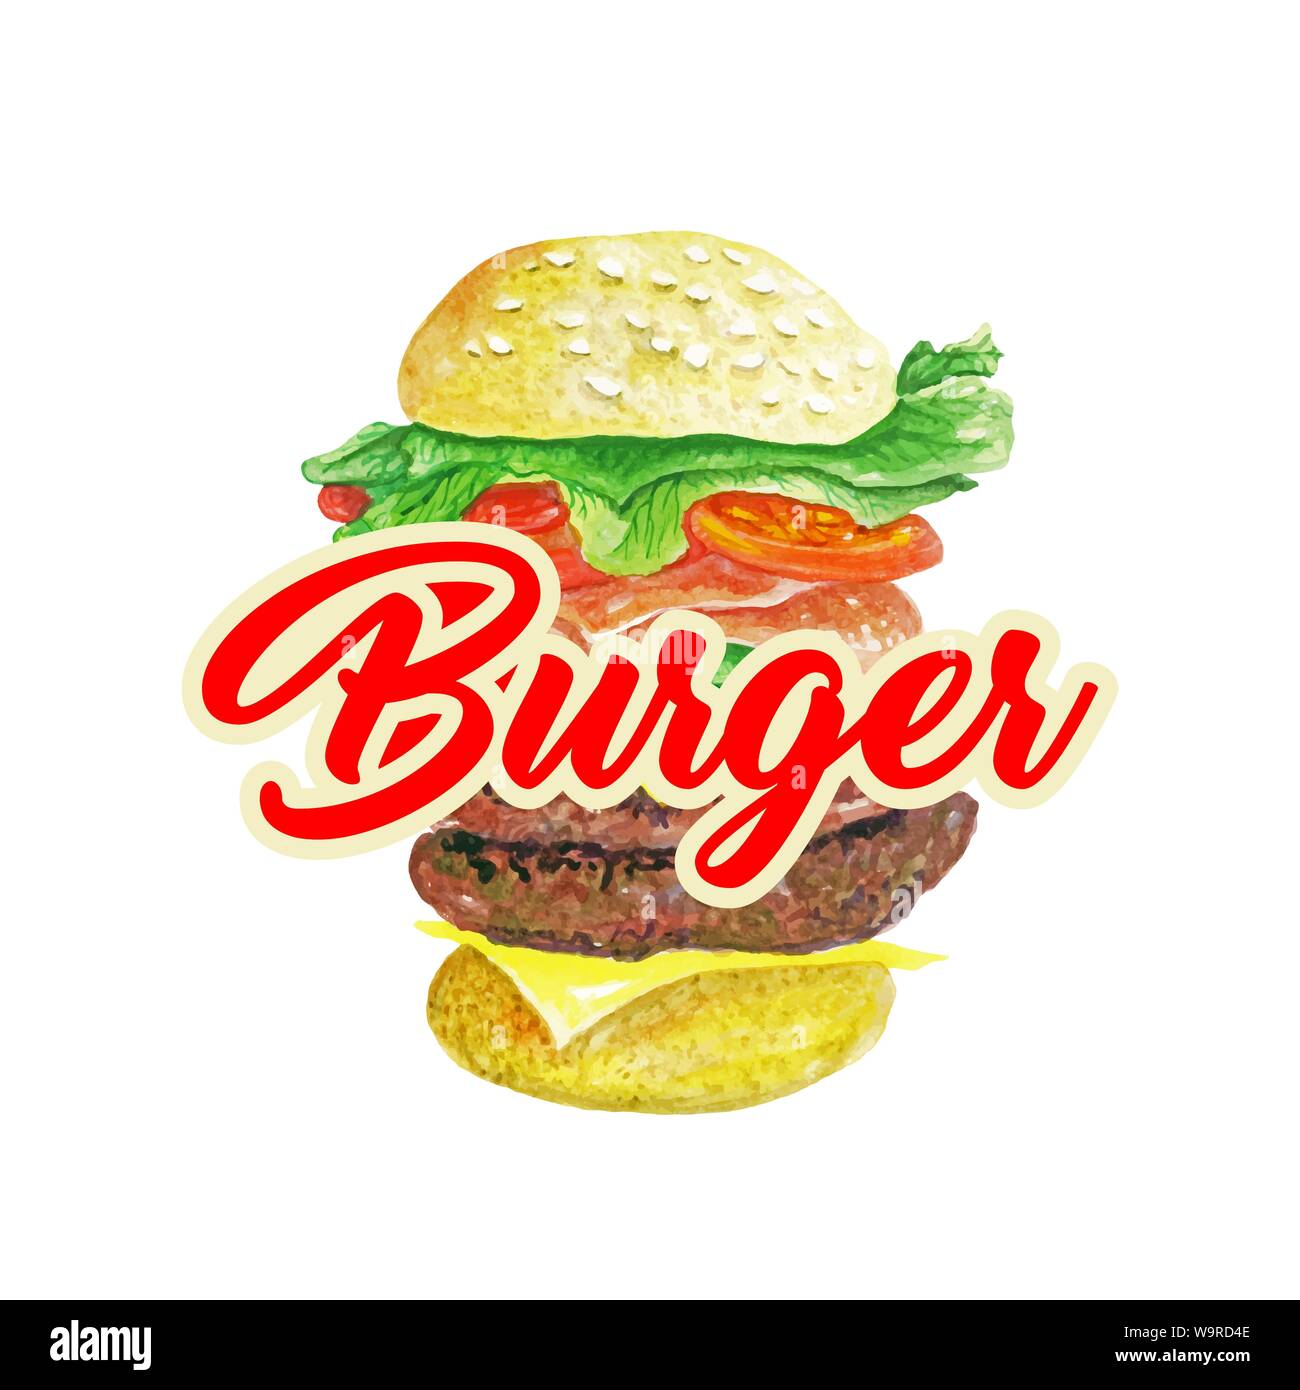 Burger Classic isoliert Vektor. Hamburger oder American Cheeseburger mit Salat Tomate Käse und Rindfleisch Raster Abbildung mit Schriftzug. Fast Food essen Konzept. Erstaunlich Sandwich King Size. Stock Vektor